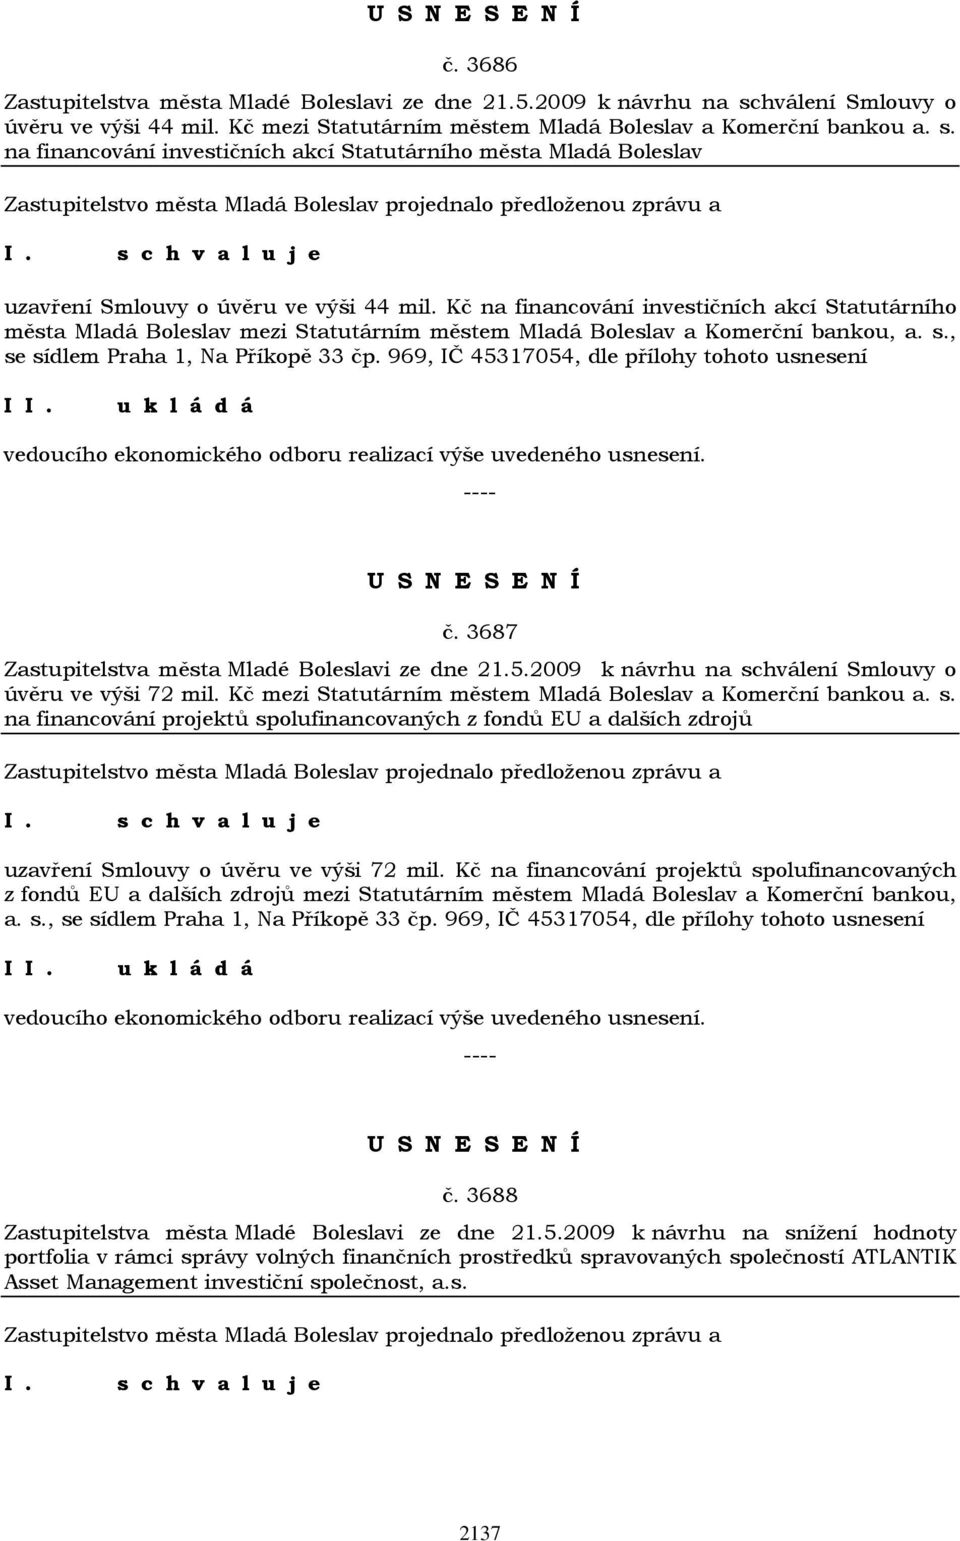 969, IČ 45317054, dle přílohy tohoto usnesení I vedoucího ekonomického odboru realizací výše uvedeného usnesení. č. 3687 Zastupitelstva města Mladé Boleslavi ze dne 21.5.2009 k návrhu na schválení Smlouvy o úvěru ve výši 72 mil.